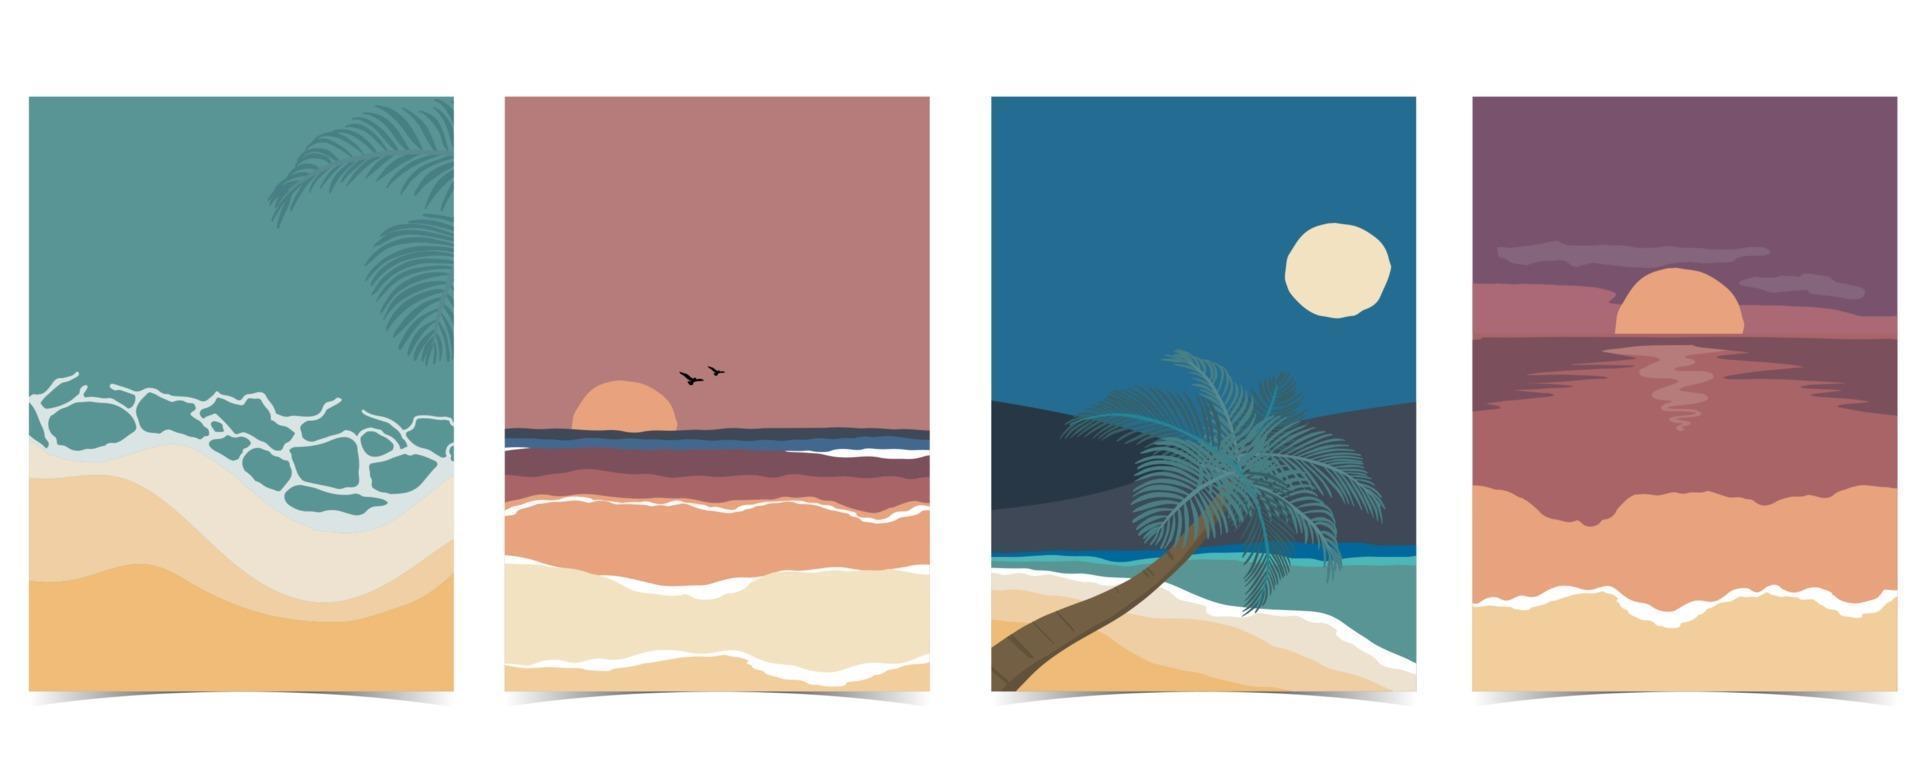 cartão postal de praia com sol, mar e céu à noite vetor